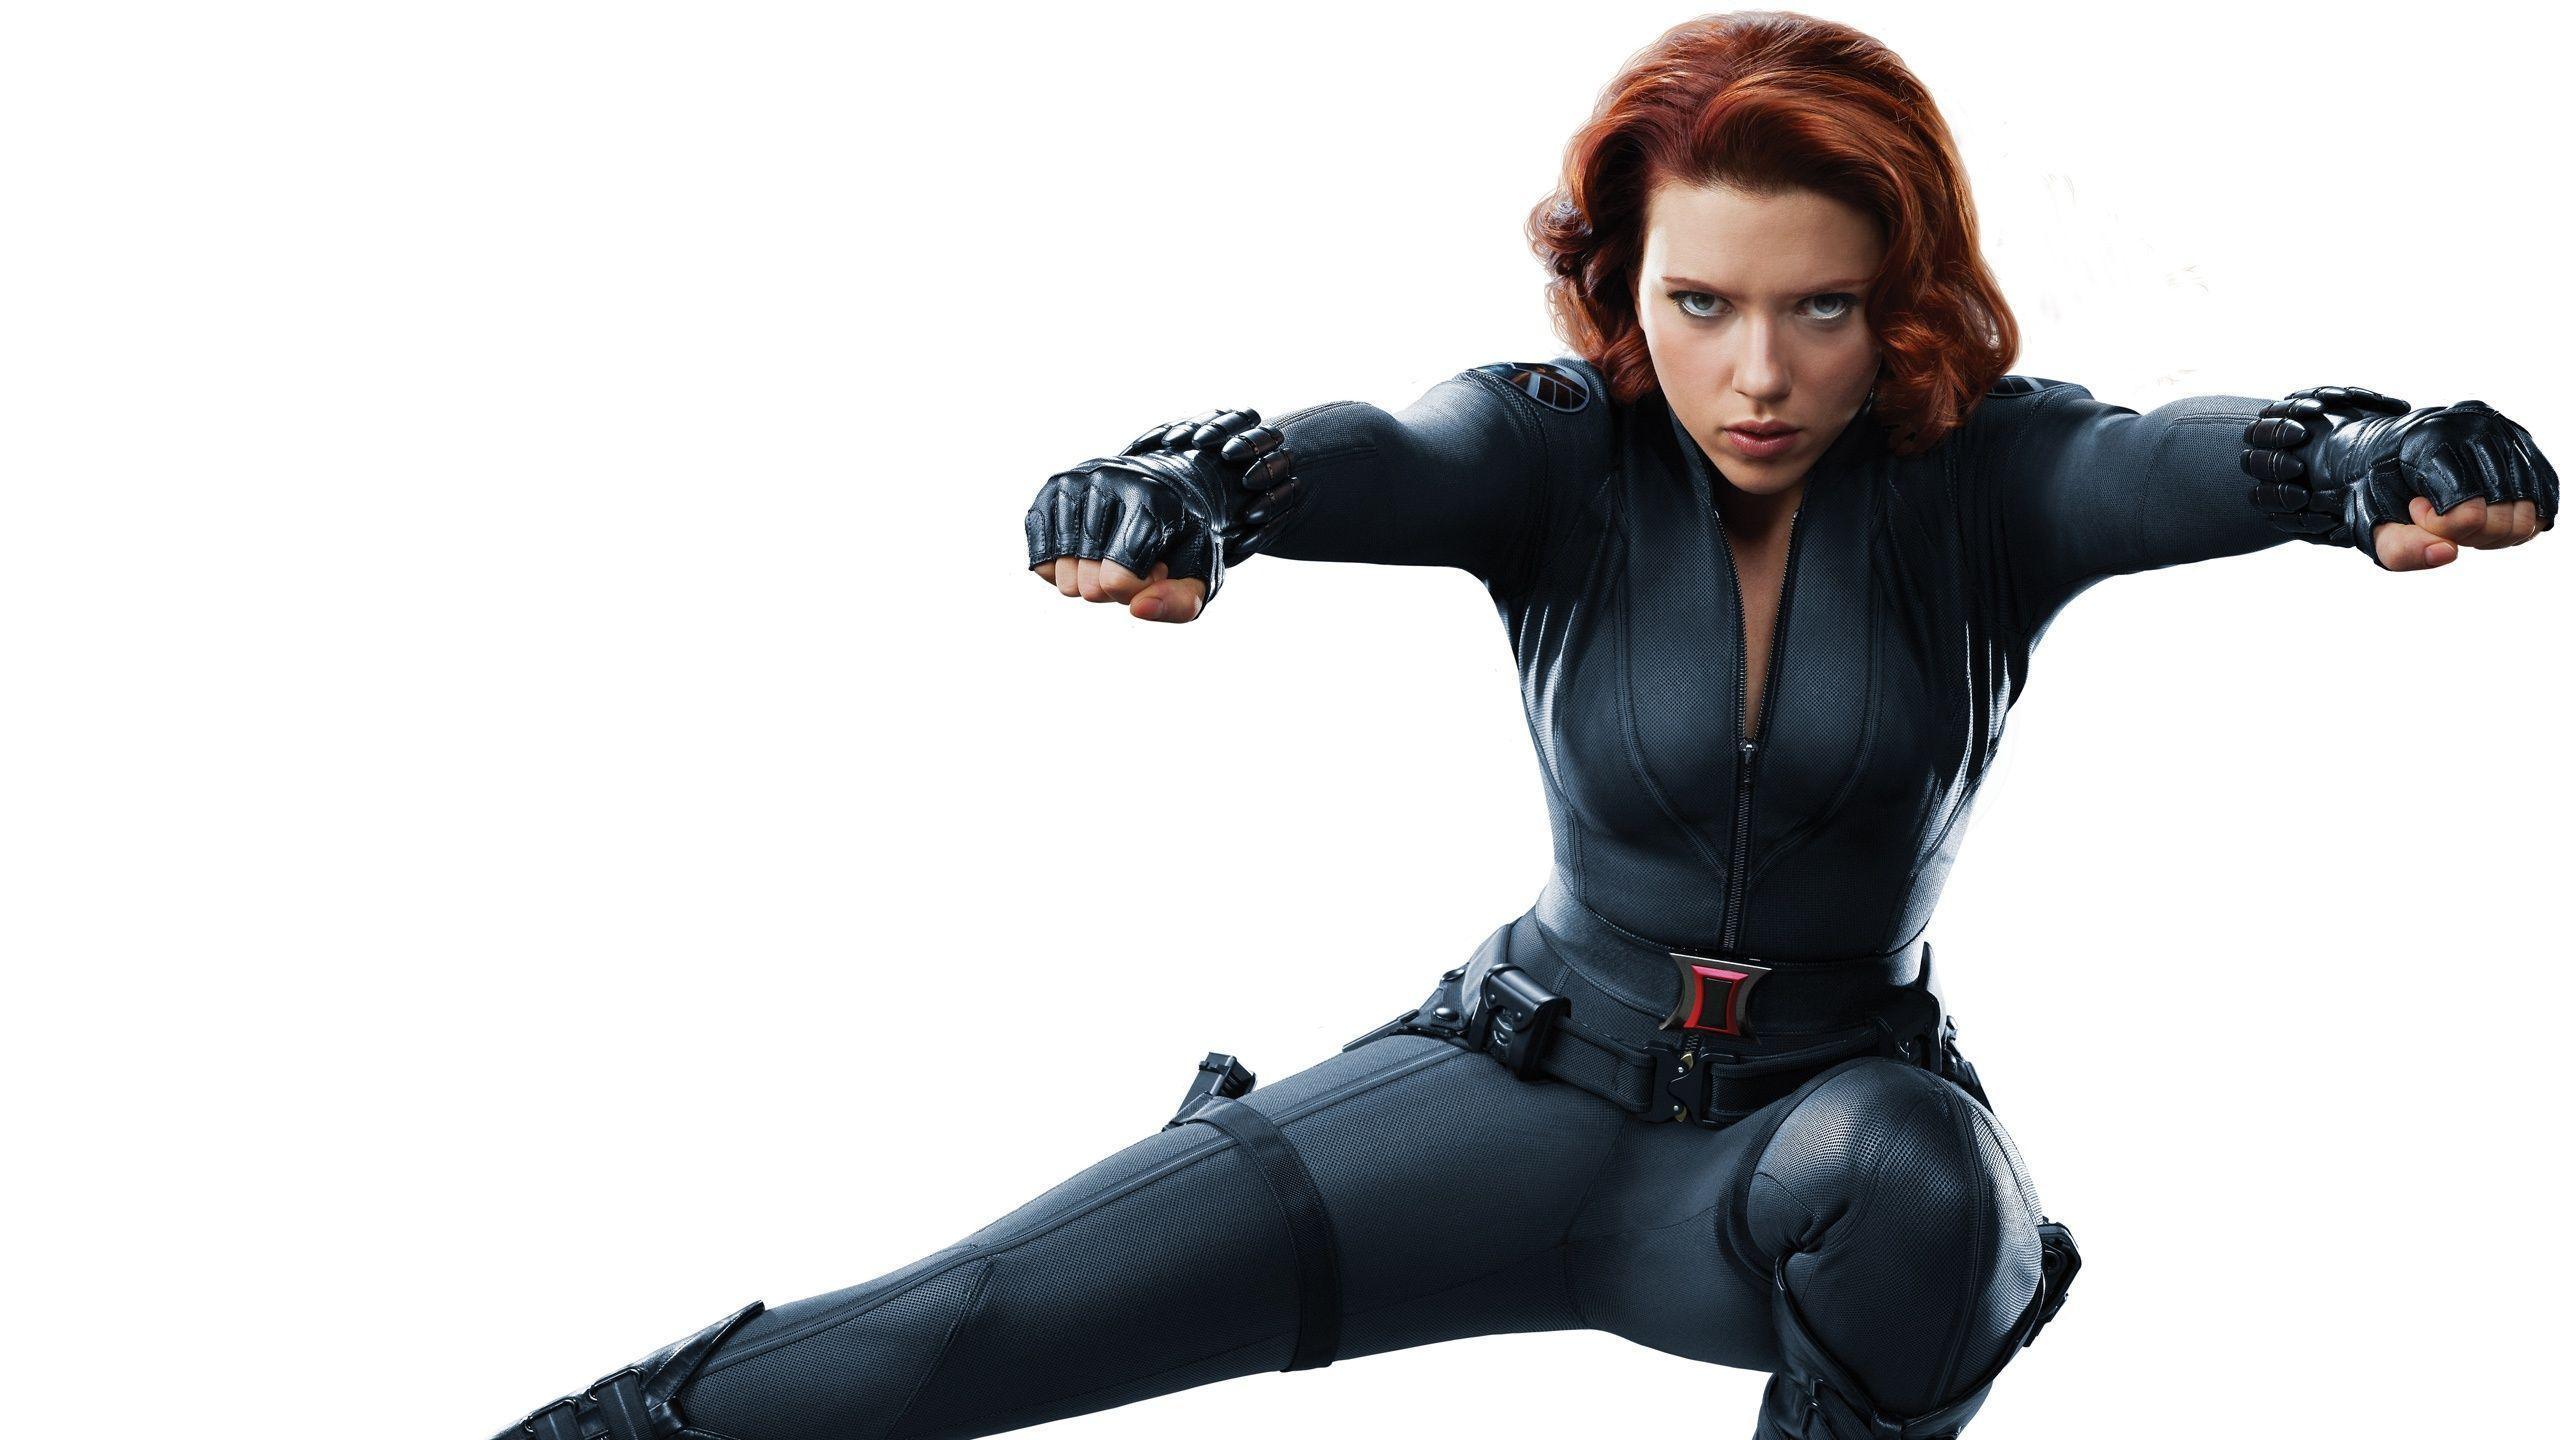 8697) Scarlett Johansson Avengers Picture Wallpaper